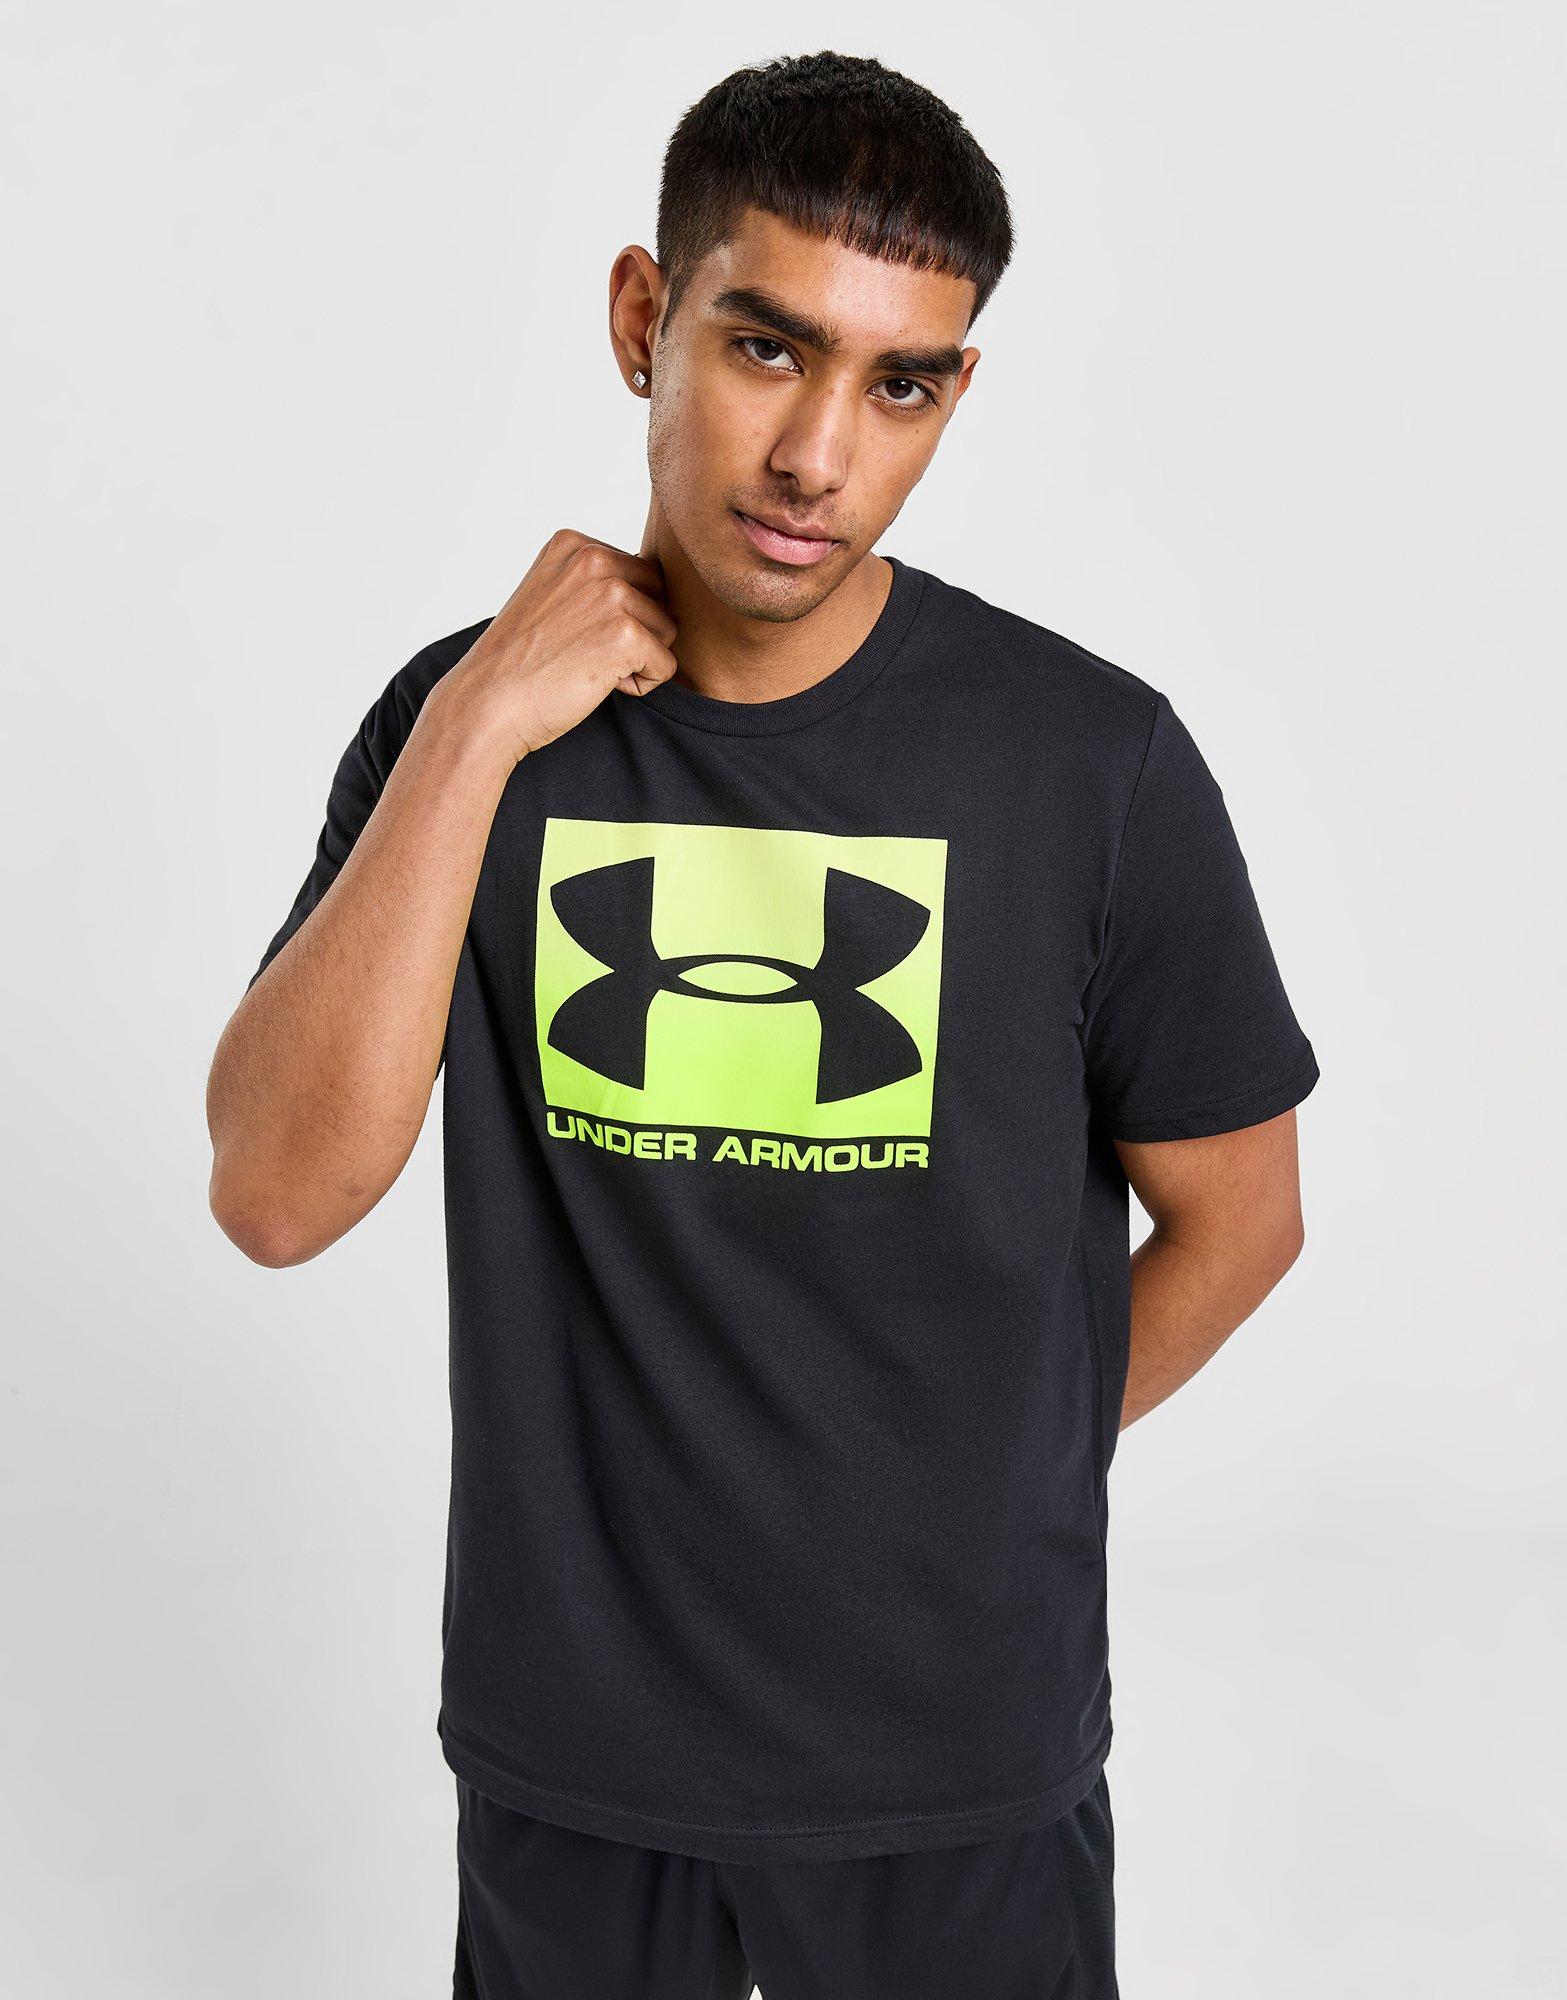 Compra Camisetas Hombre - Ropa Quiksilver  Camisetas, Ropa under armour,  Camiseta hombre